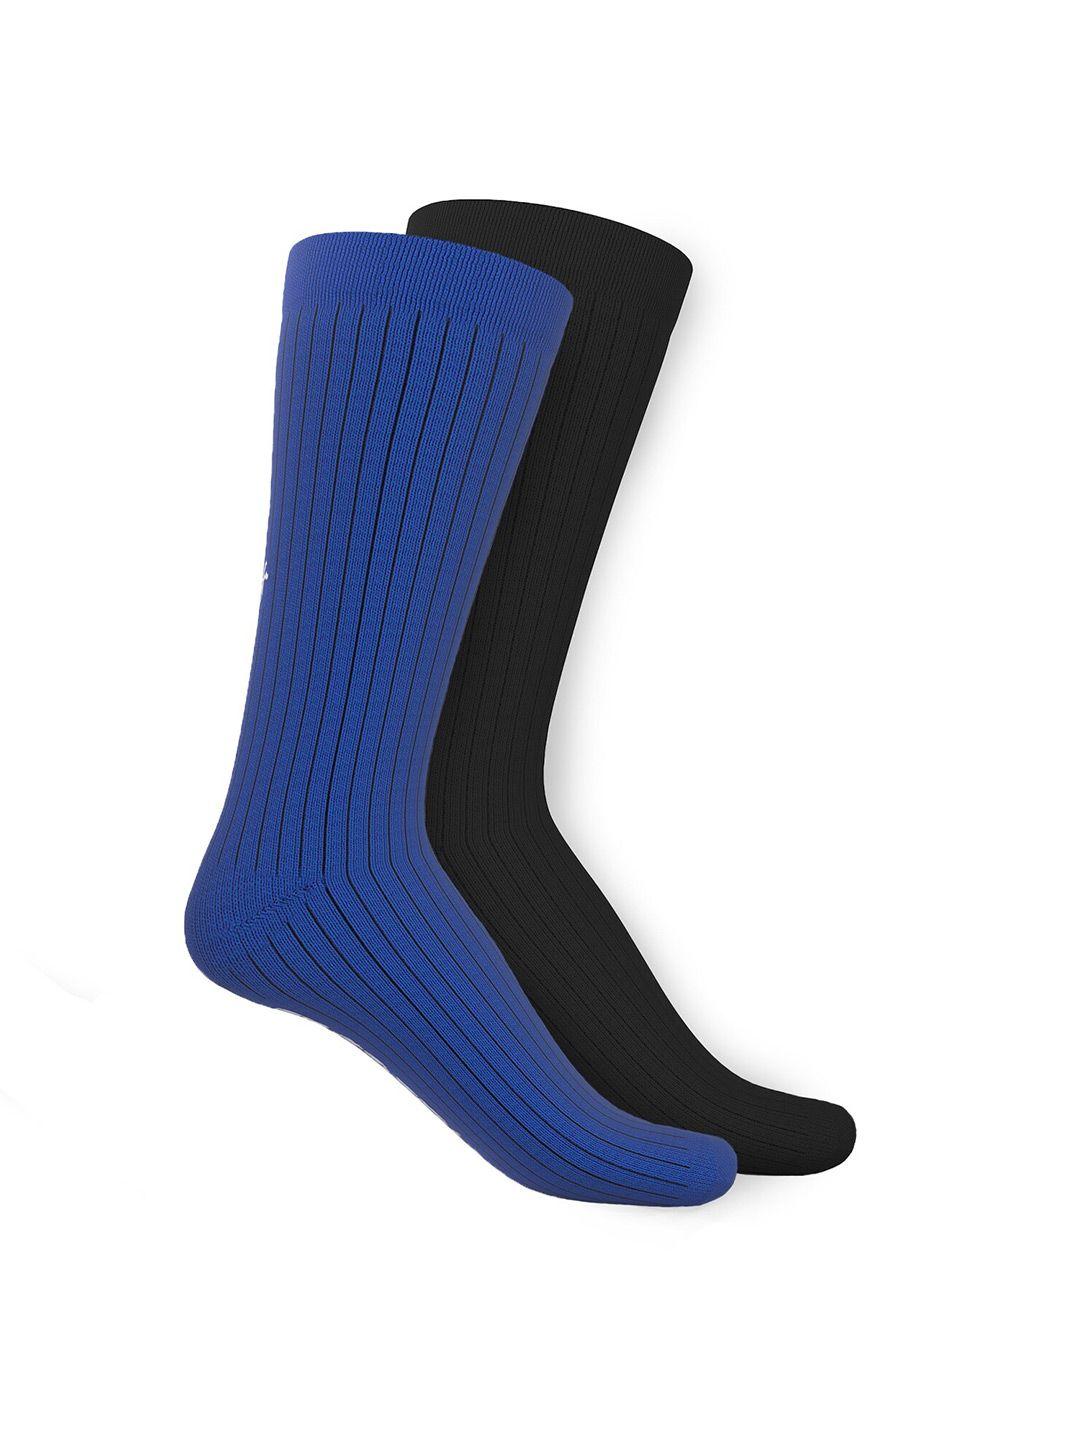 talkingsox unisex pack of 2 striped calf length socks